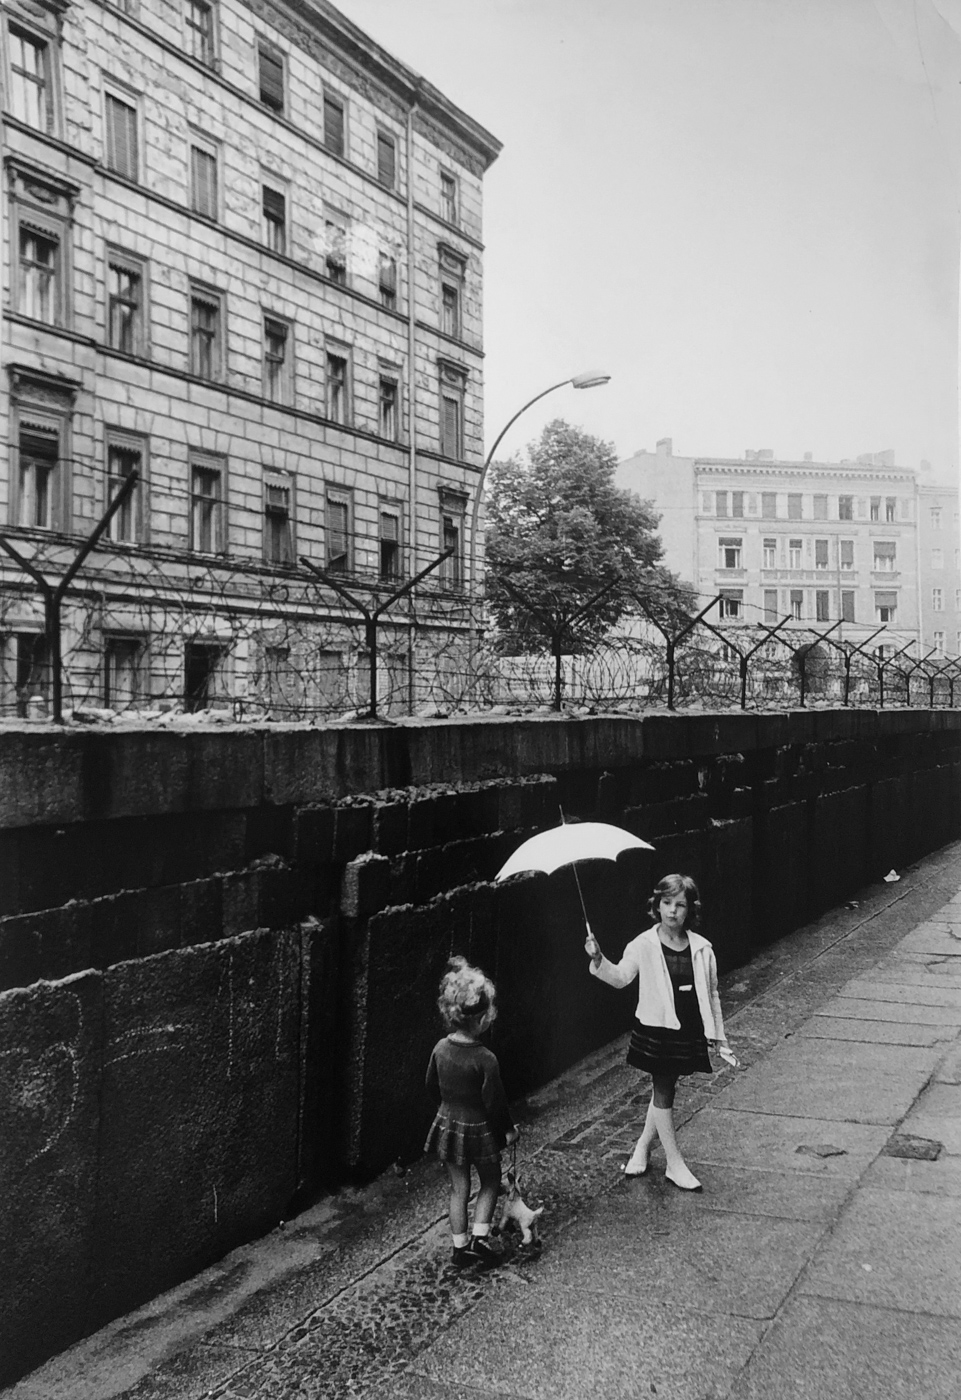 Thomas Hoepker, West-Berlin, Deutschland, 1963